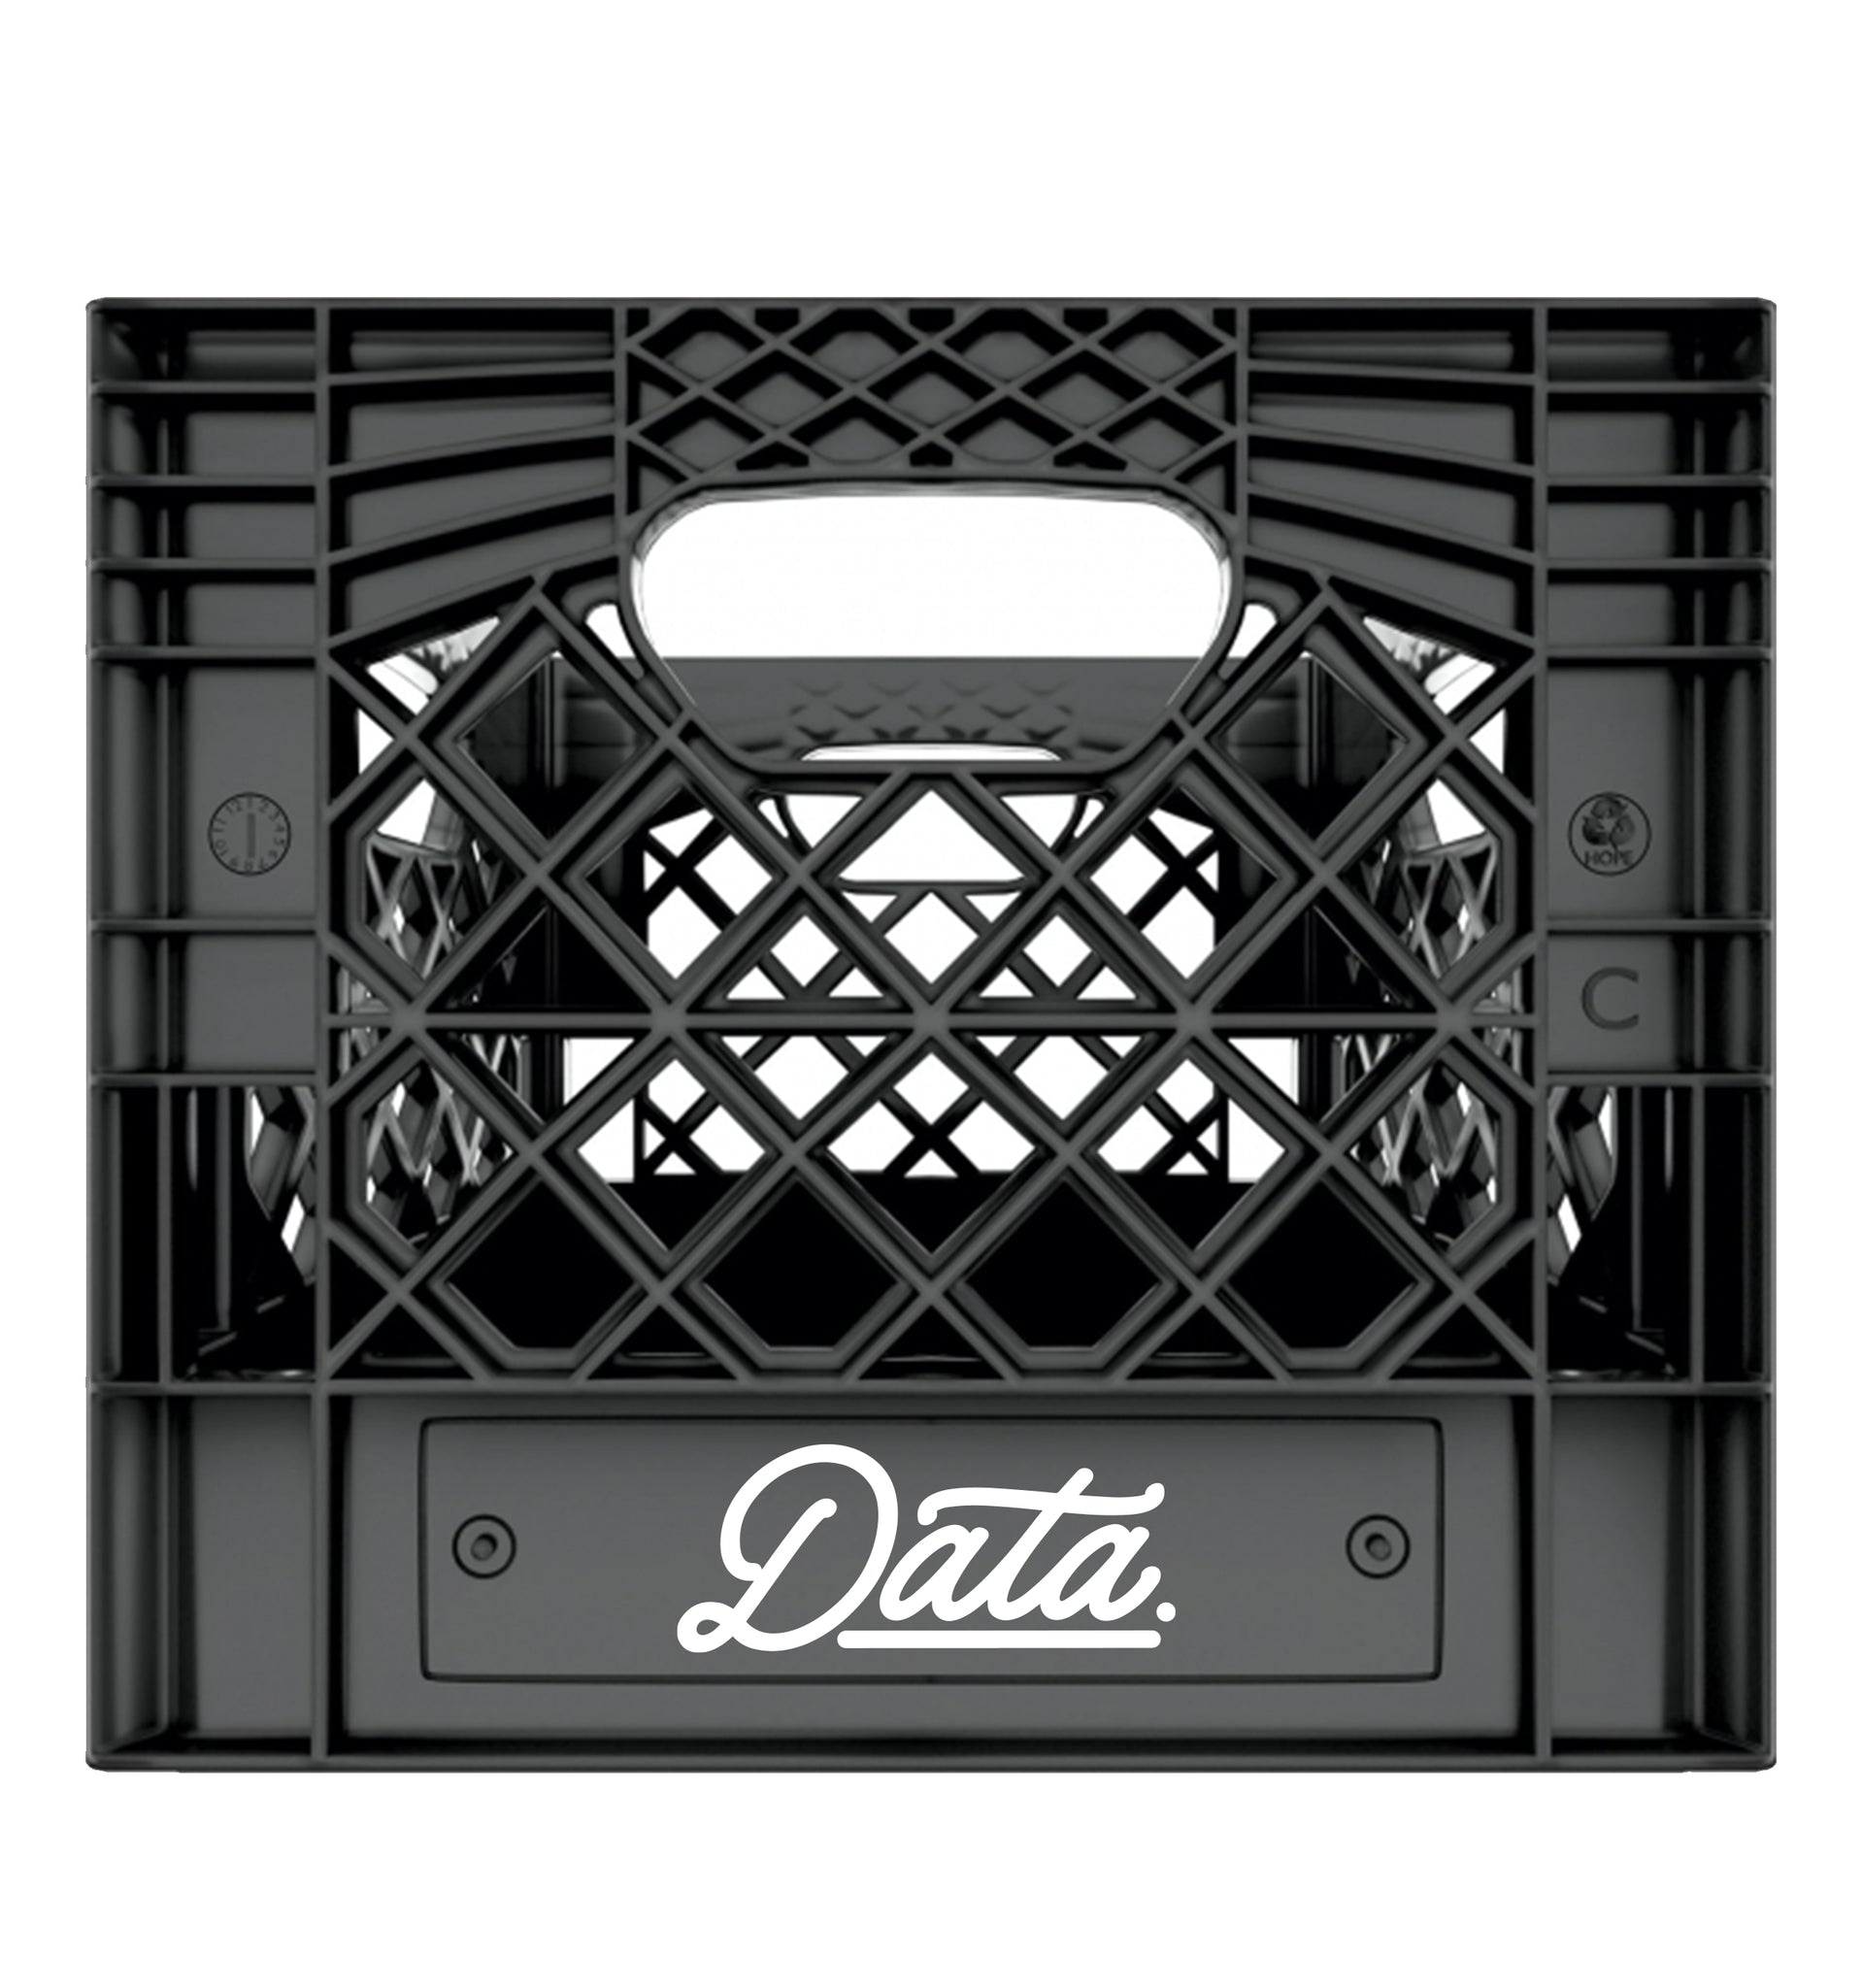 Data Milk Crate - datacrew